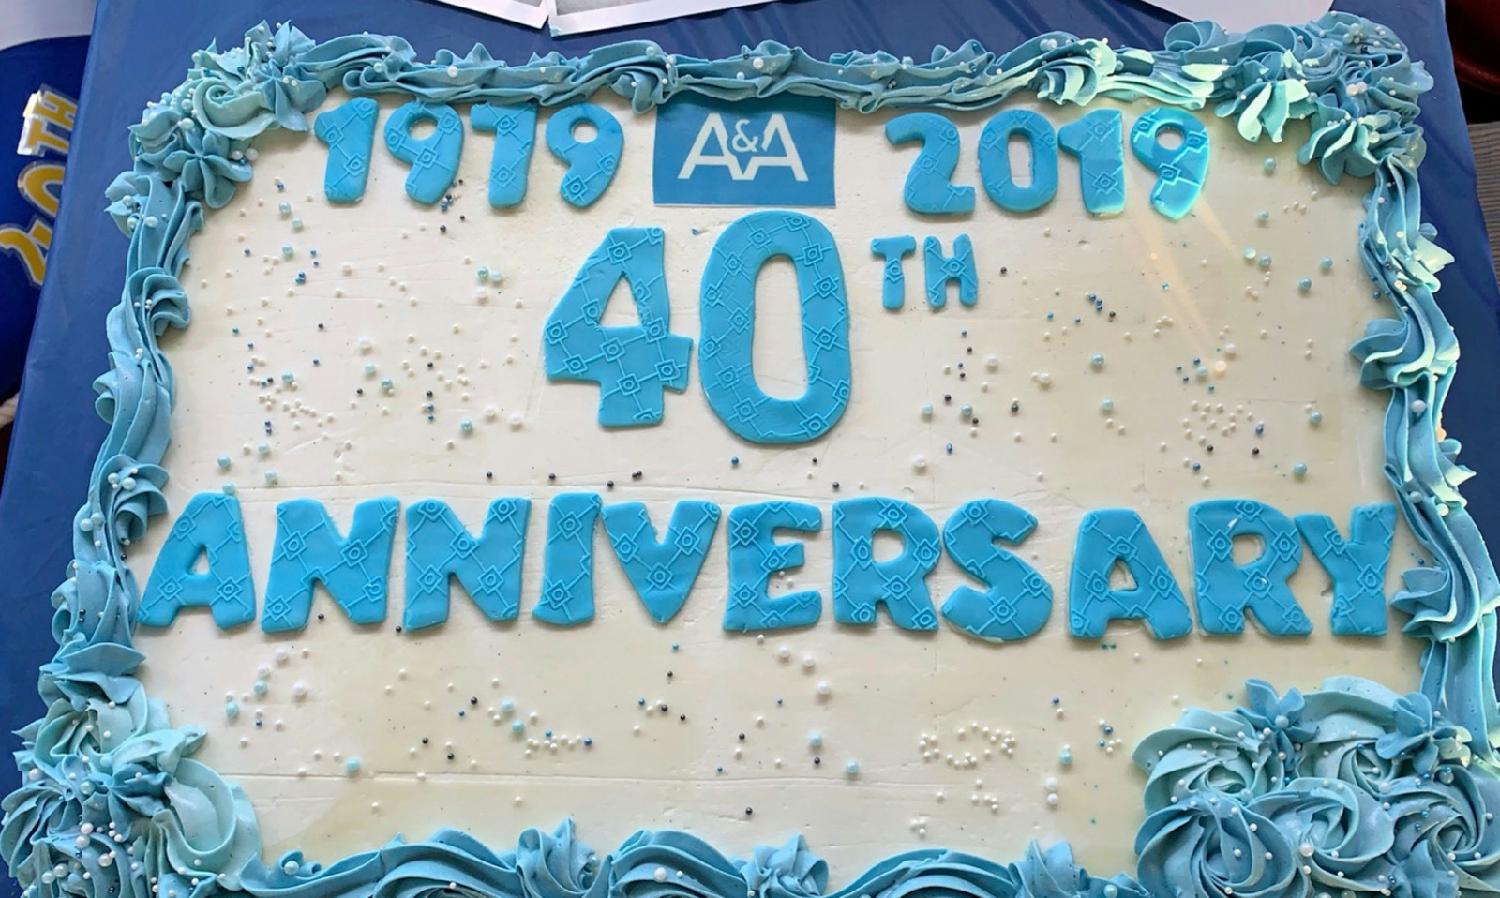 A & A 4oth Anniversary